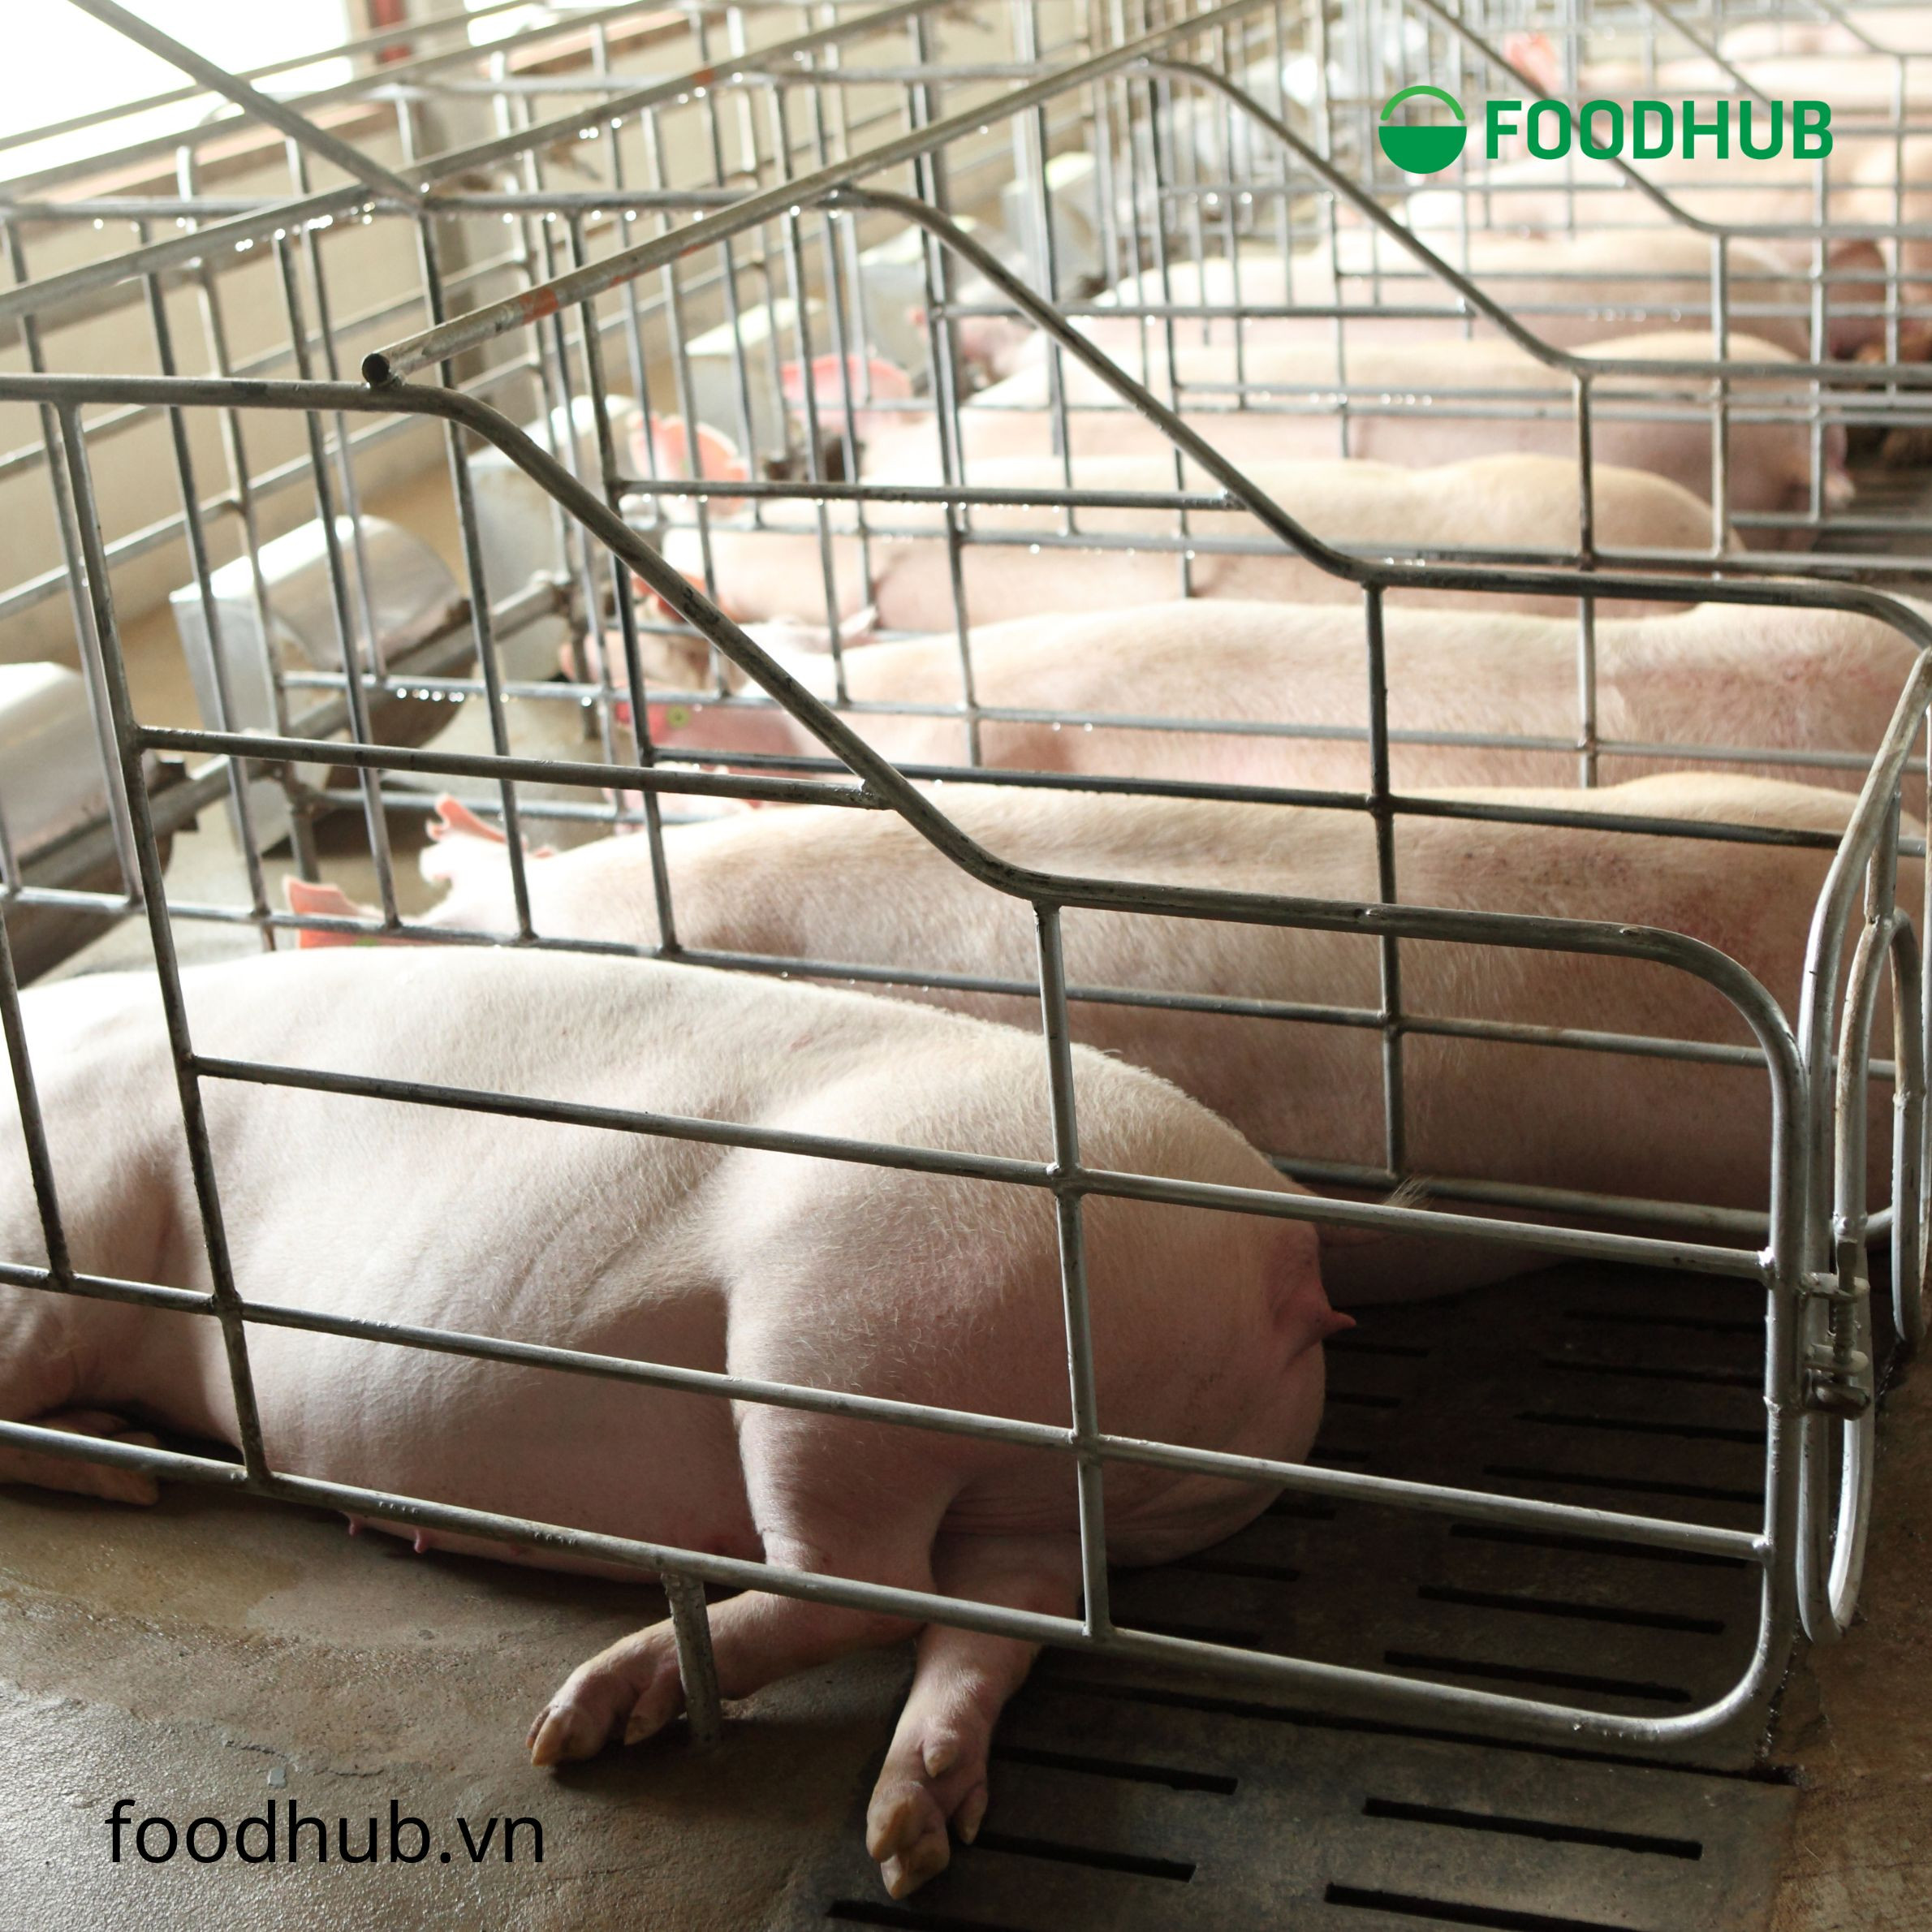 Một báo cáo năm 2001 của Liên hiệp các nhà khoa học có liên quan (UCS), một tổ chức vận động dựa trên khoa học, cho biết 24,6 triệu bảng thuốc kháng sinh được sử dụng cho mục đích tăng trọng lượng ở động vật cung cấp thực phẩm hàng năm.